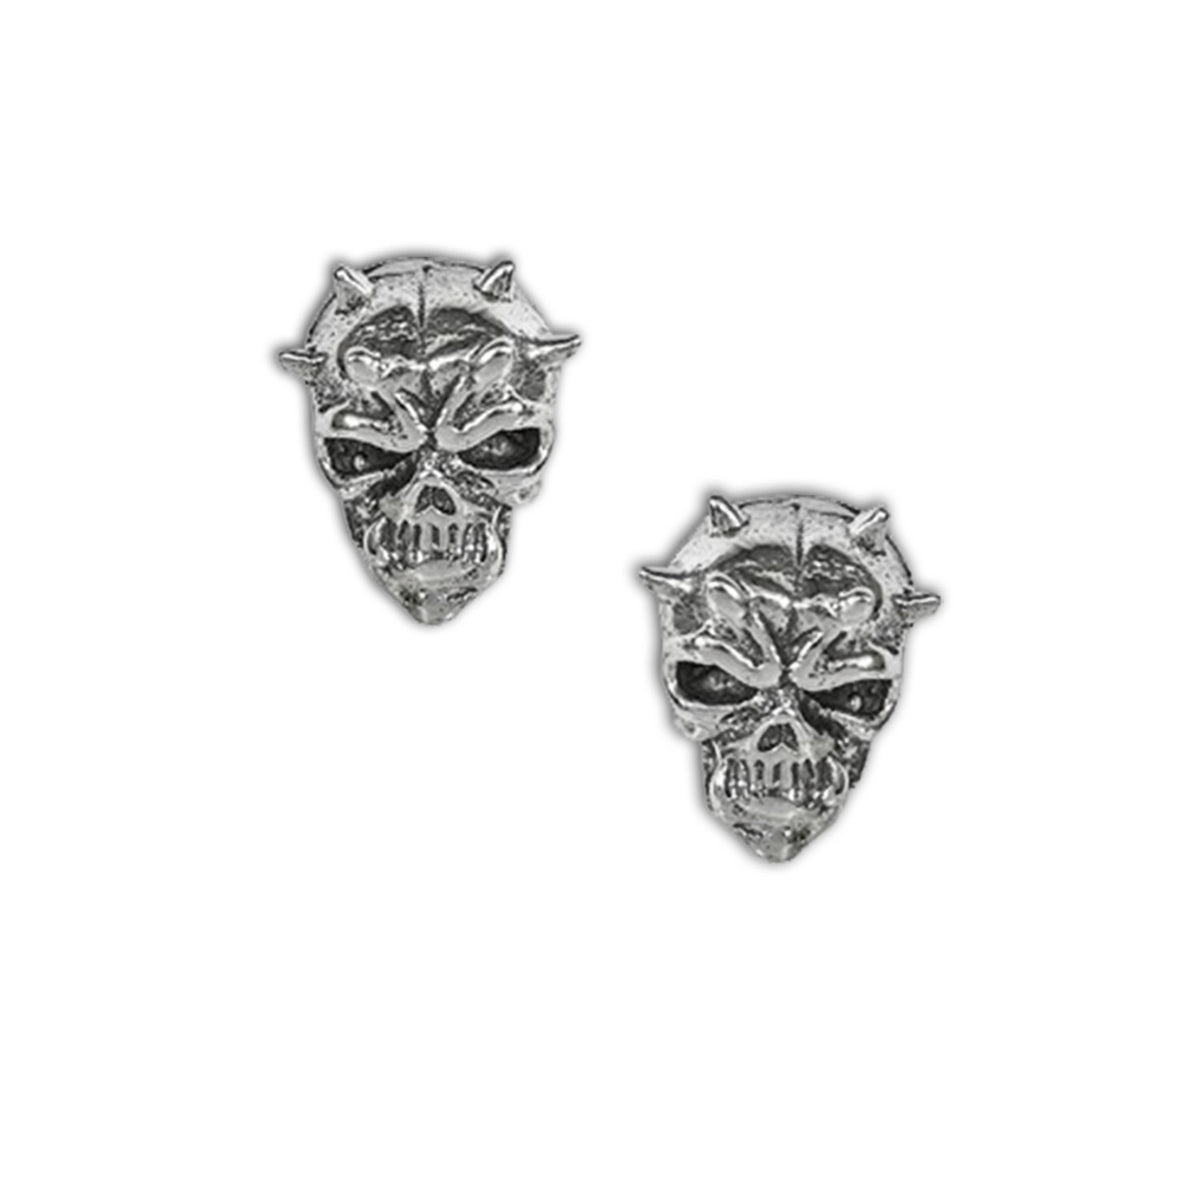 horned skull earrings - skull earring jewellery